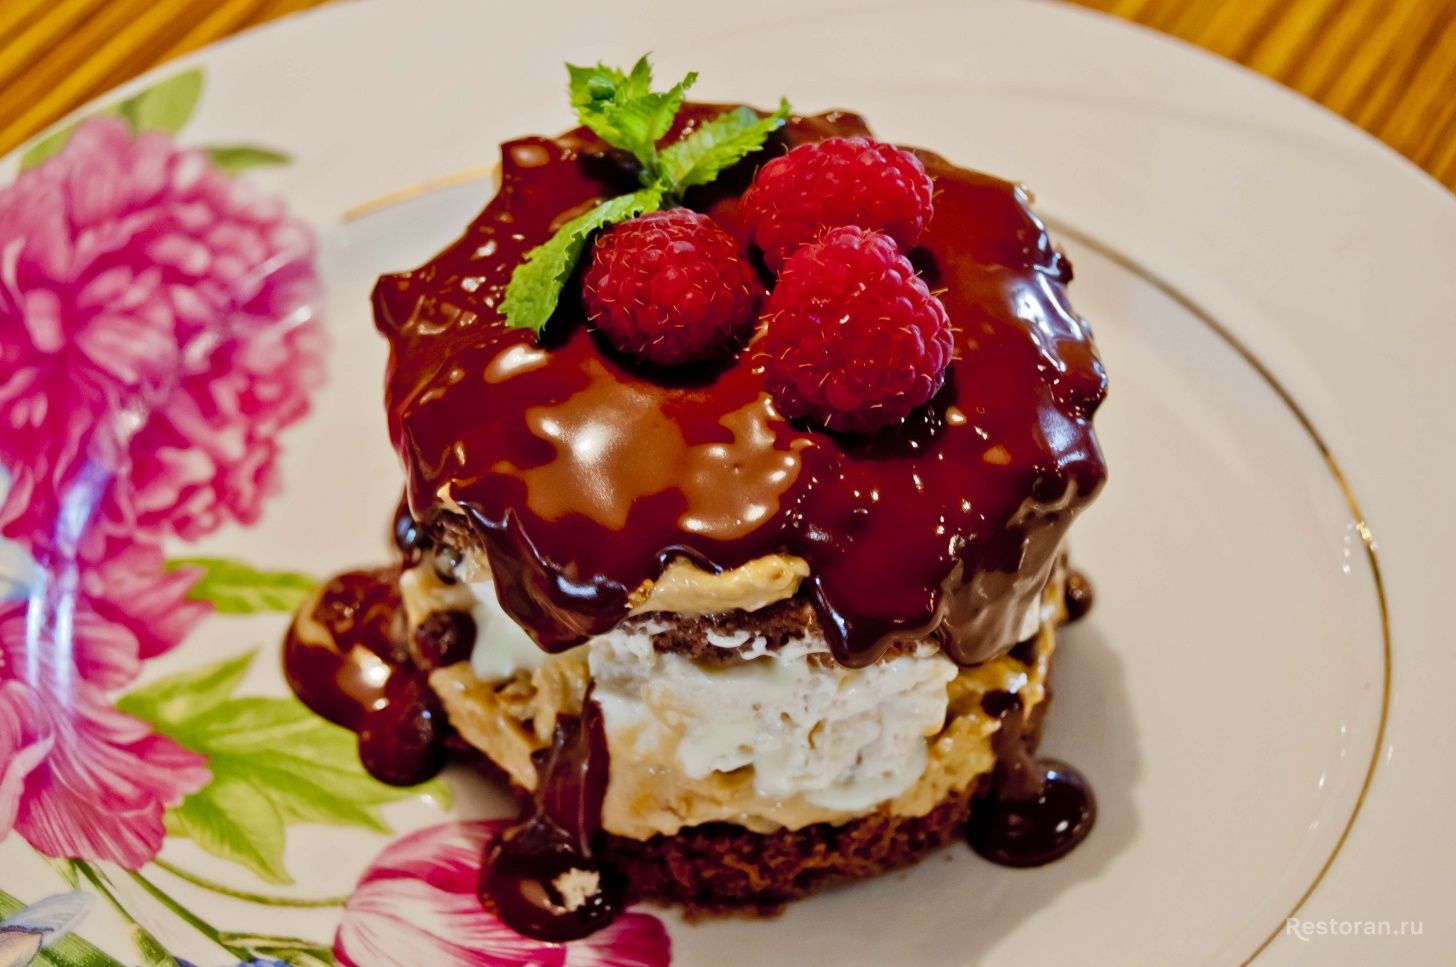 Шоколадно-ореховый торт от ресторана «Березки» - фотография № 18